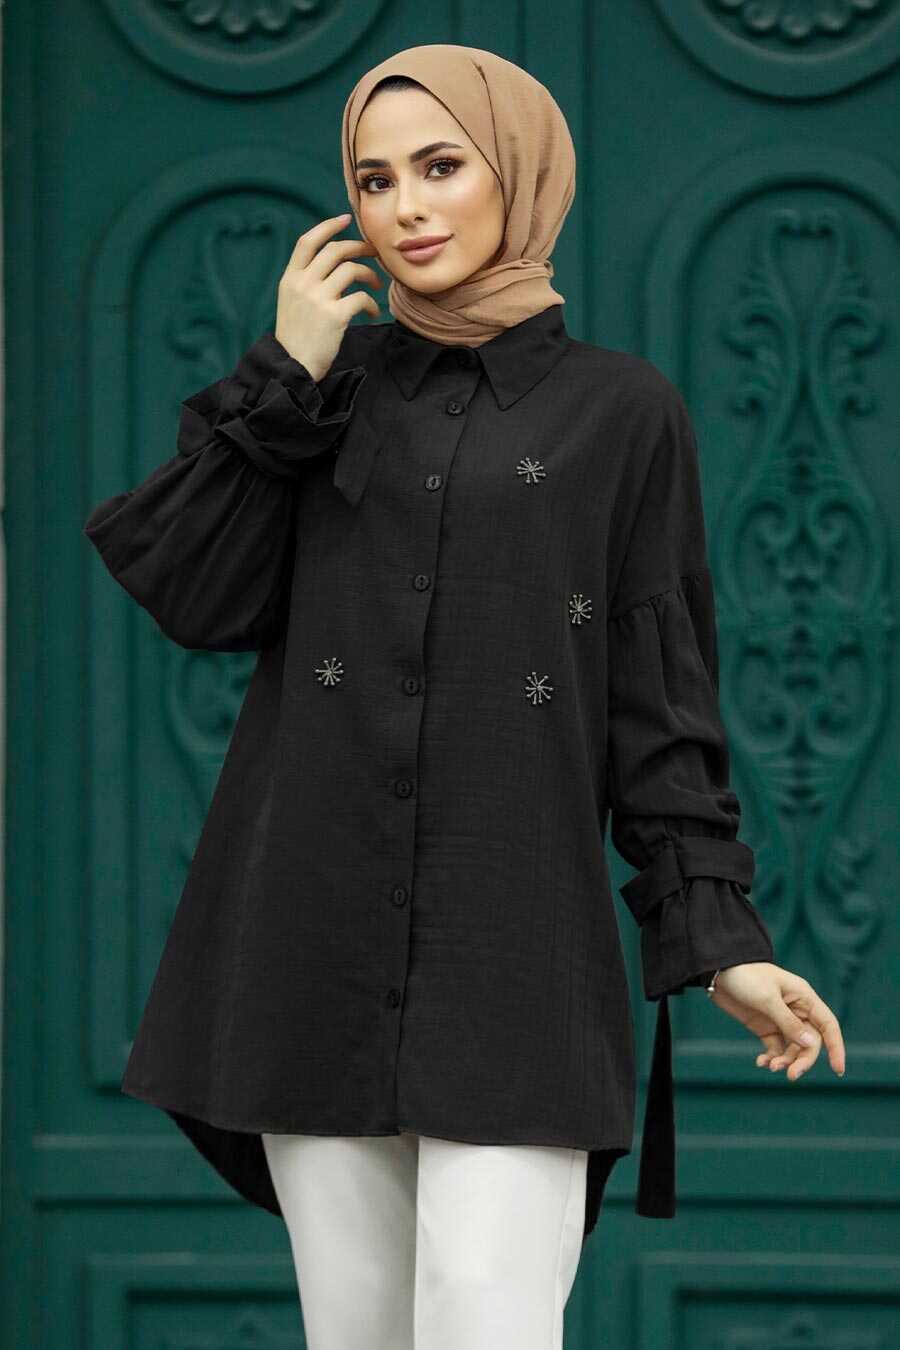 Neva Style - Black Islamic Clothing Tunic 603S